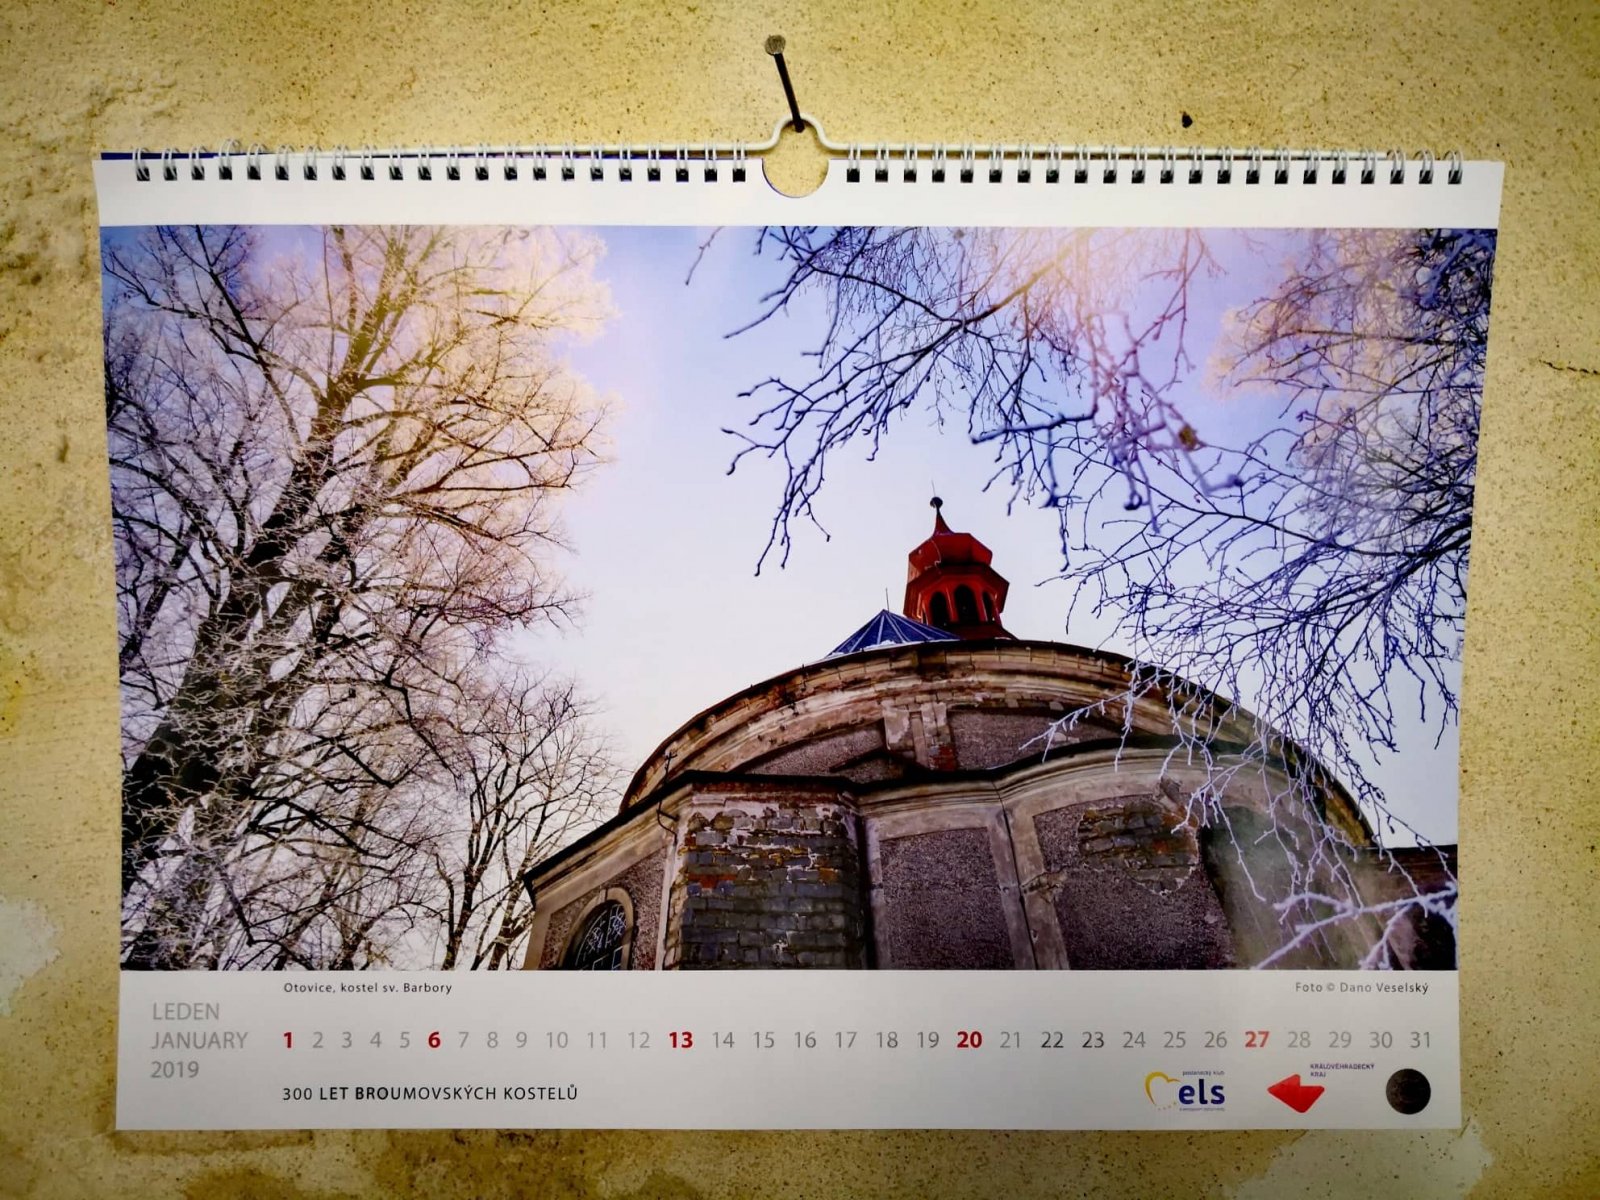 Své 300. narozeniny oslavily broumovské kostely v Bruselu speciálním charitativním kalendářem